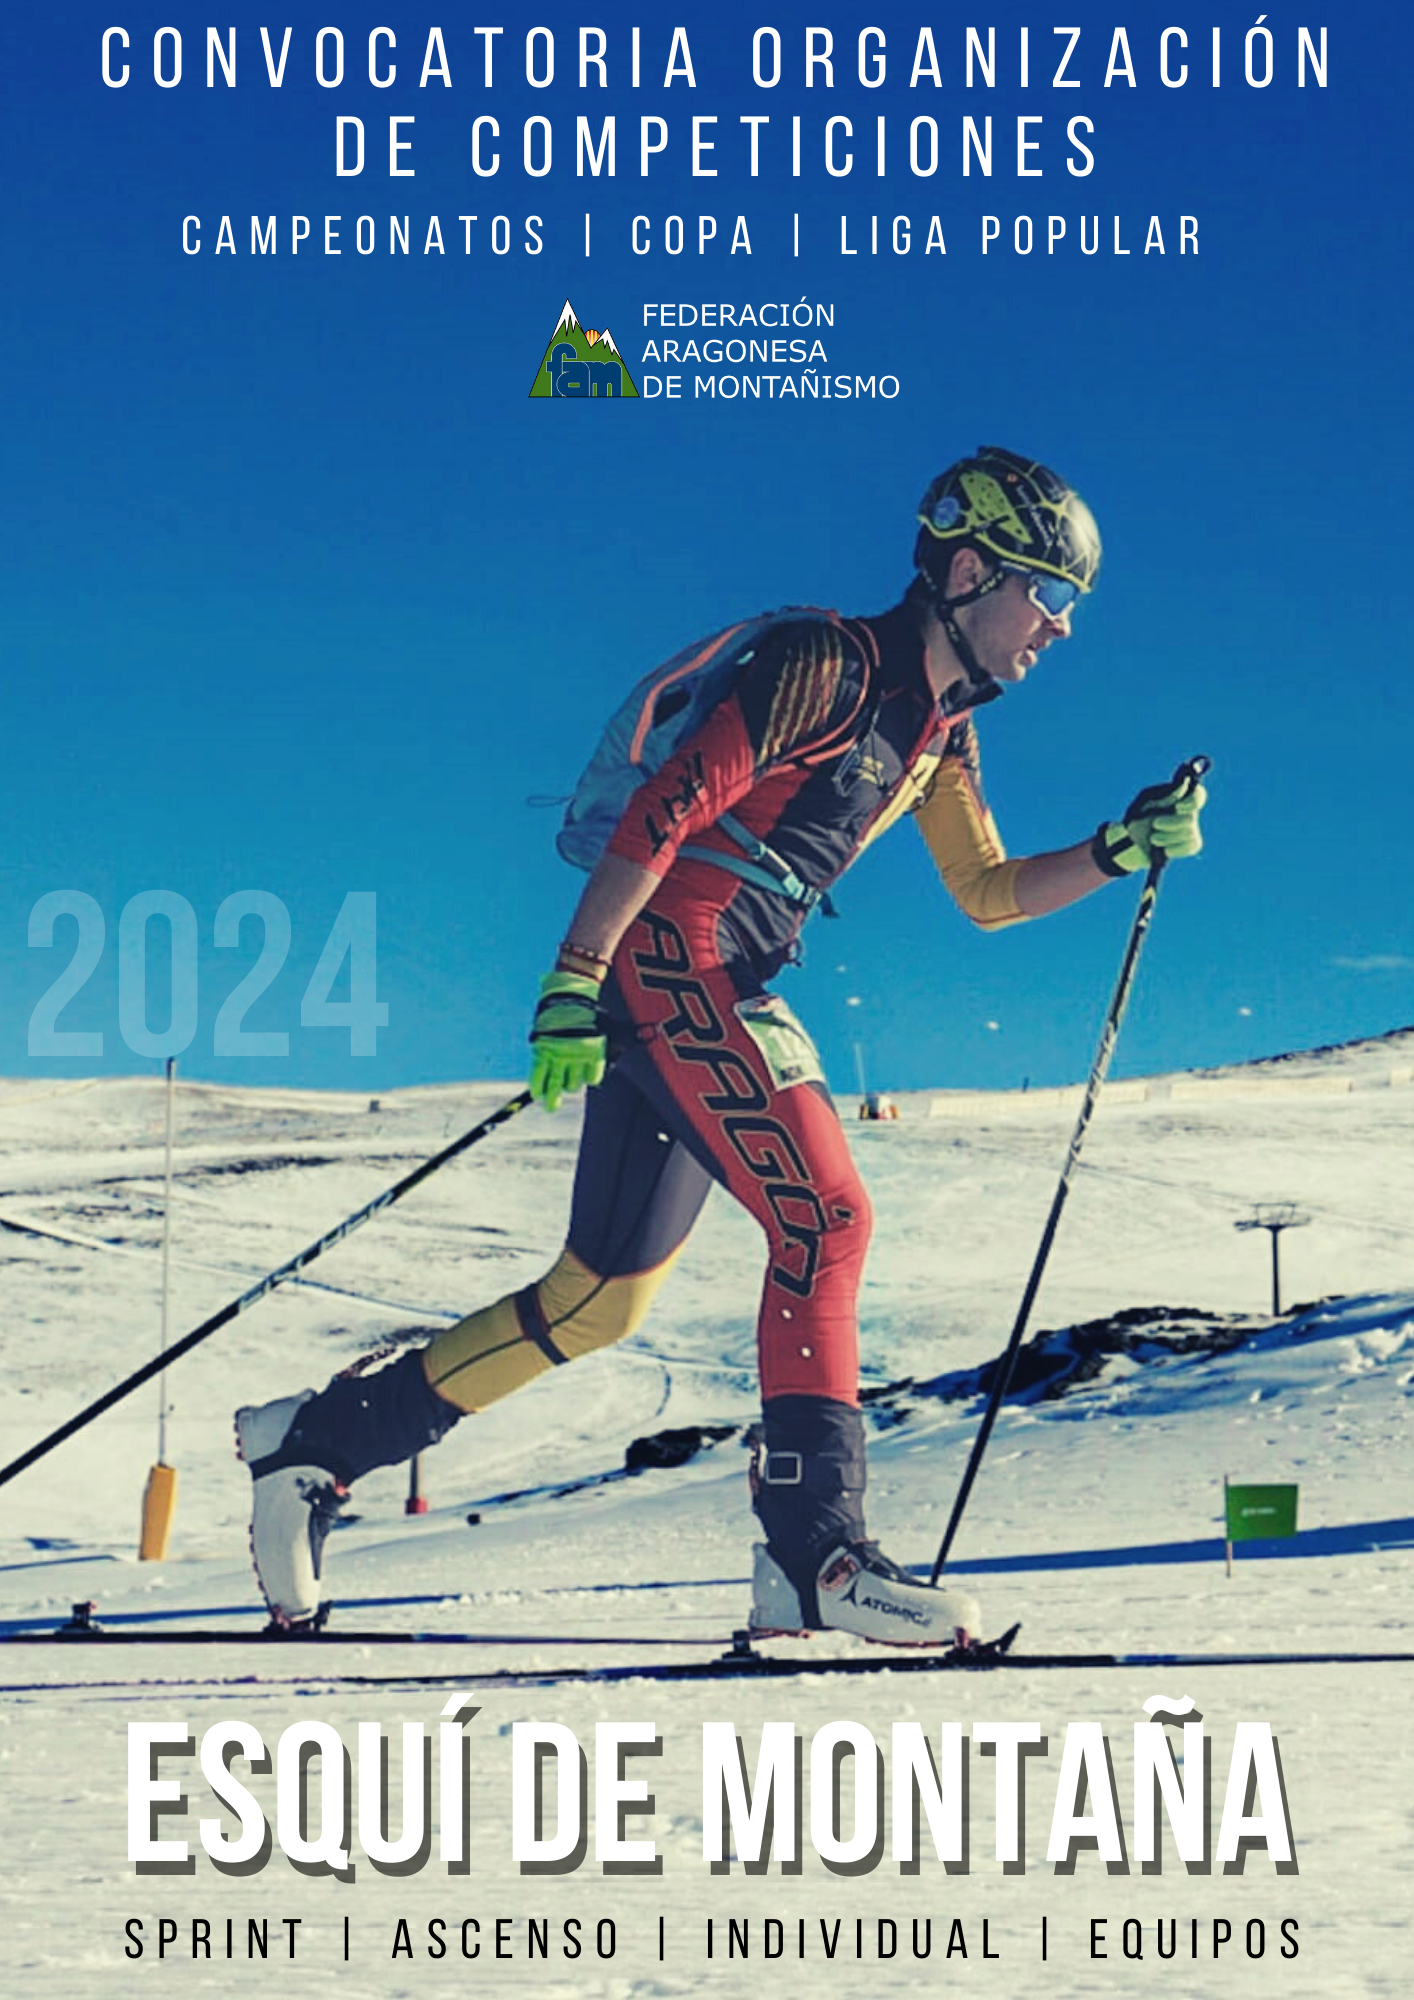 Convocatoria organización competiciones oficiales Esquí de Montaña 2024